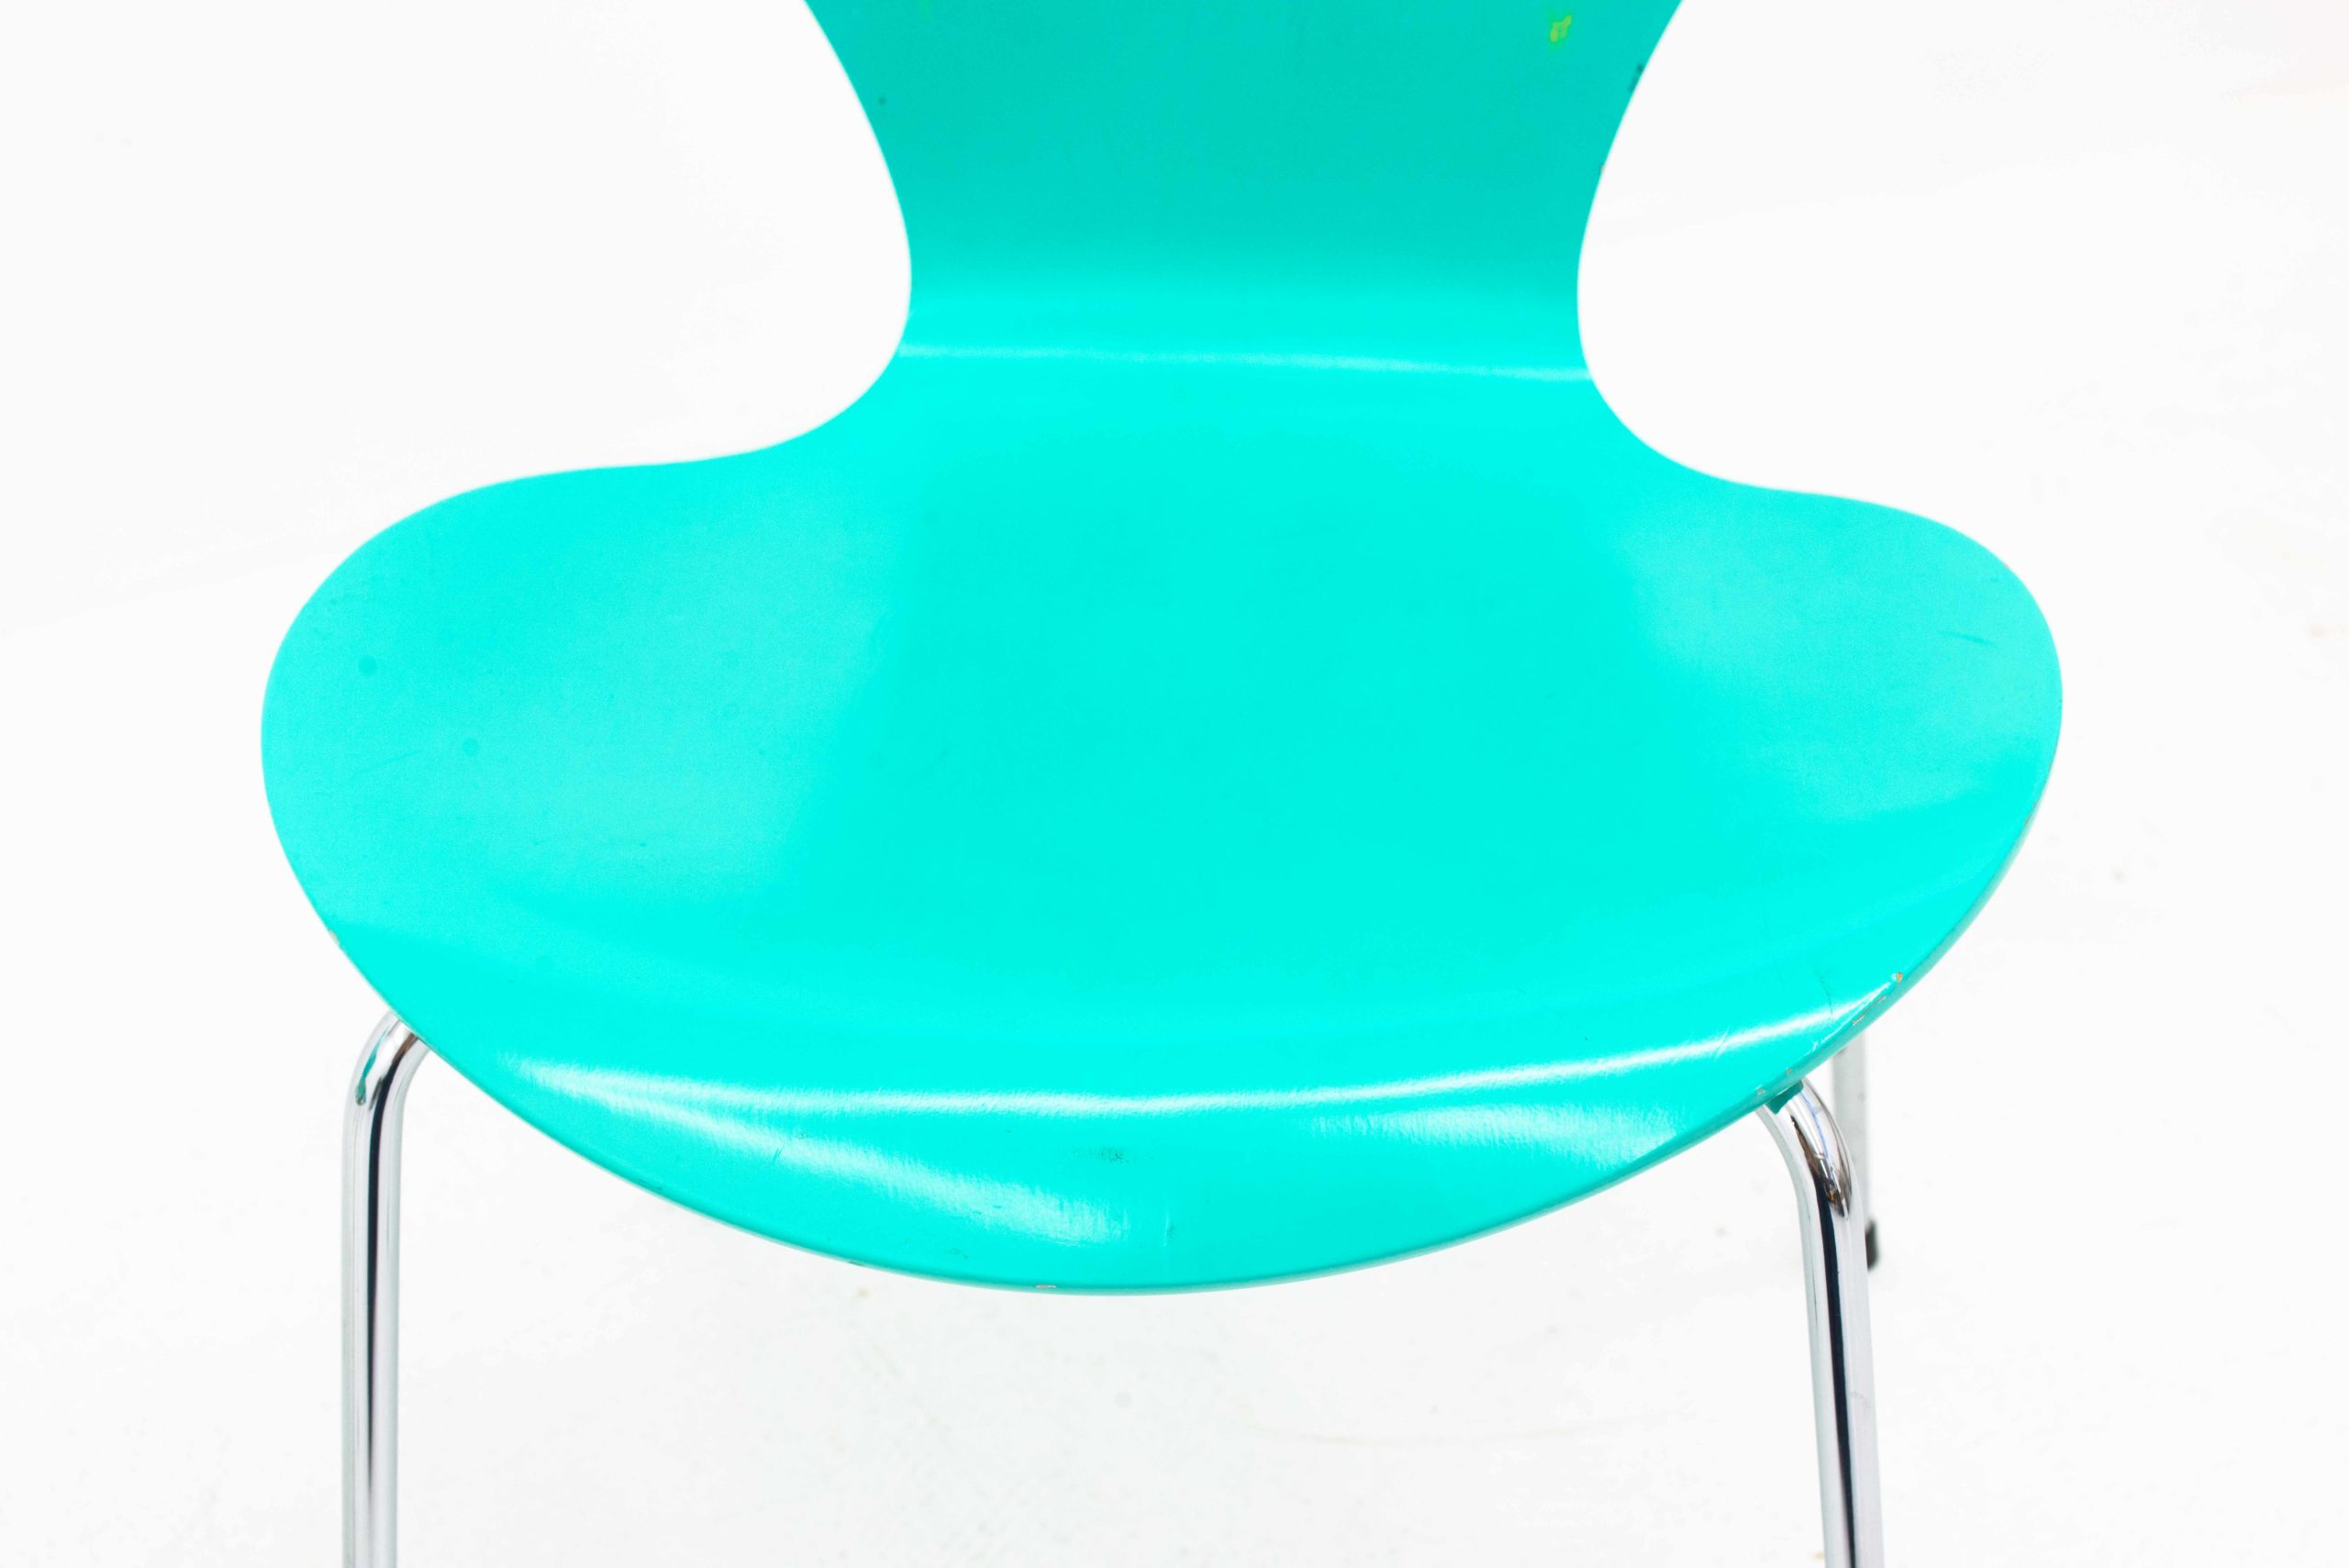 Fritz Hansen 3107 Stühle von Arne Jacobsen, im Zweierset-7